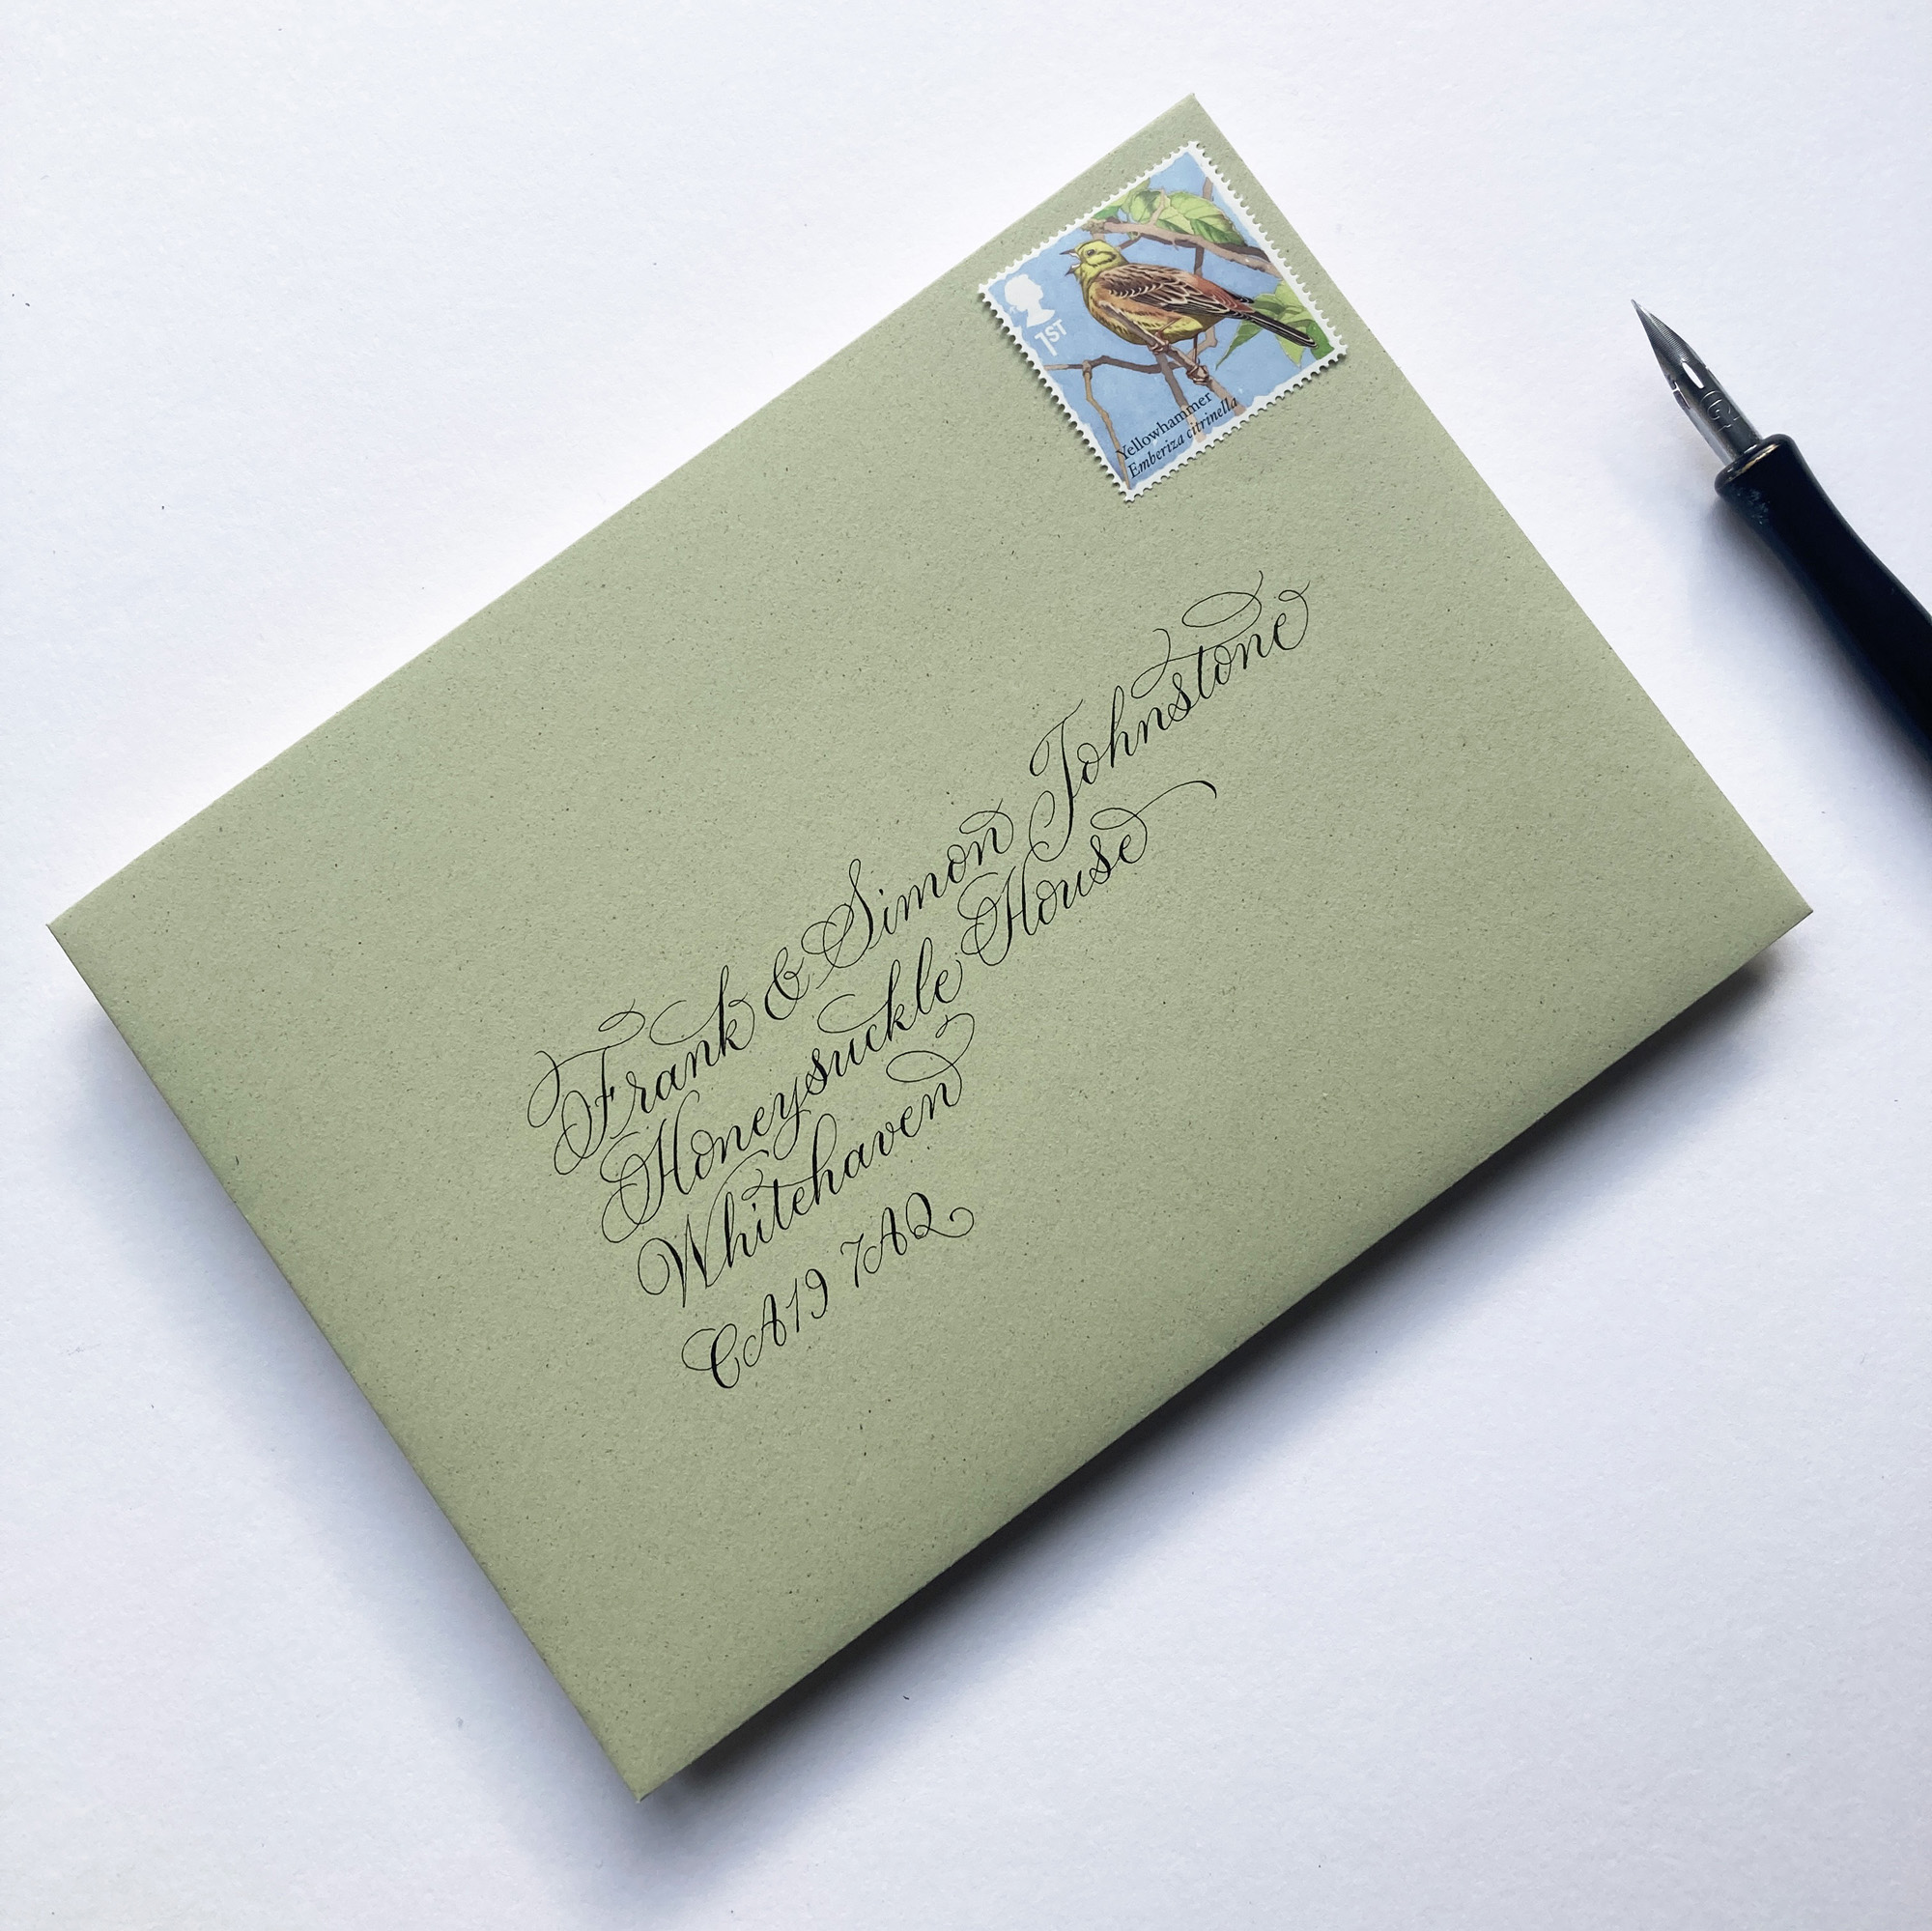 Flourished calligraphy writing for wedding invitation envelopes